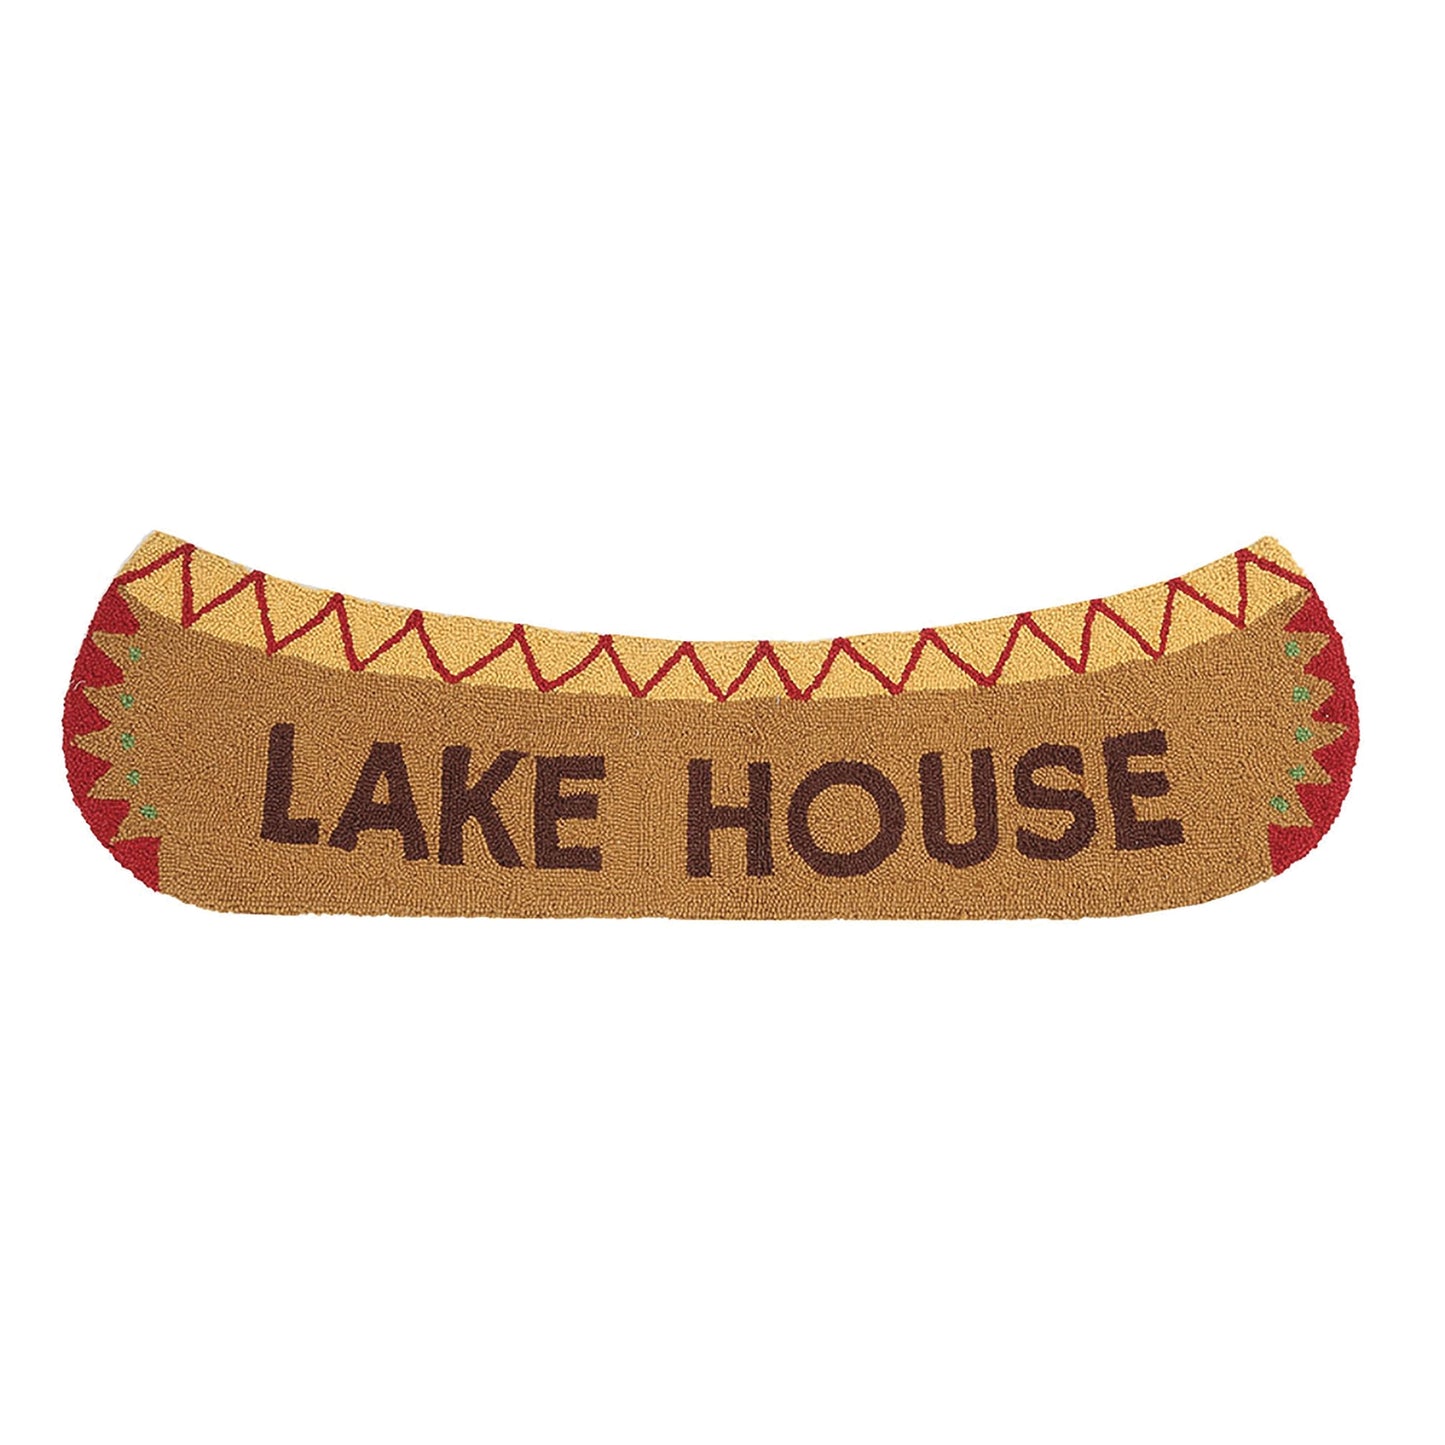 Lake House Canoe Shaped Rug